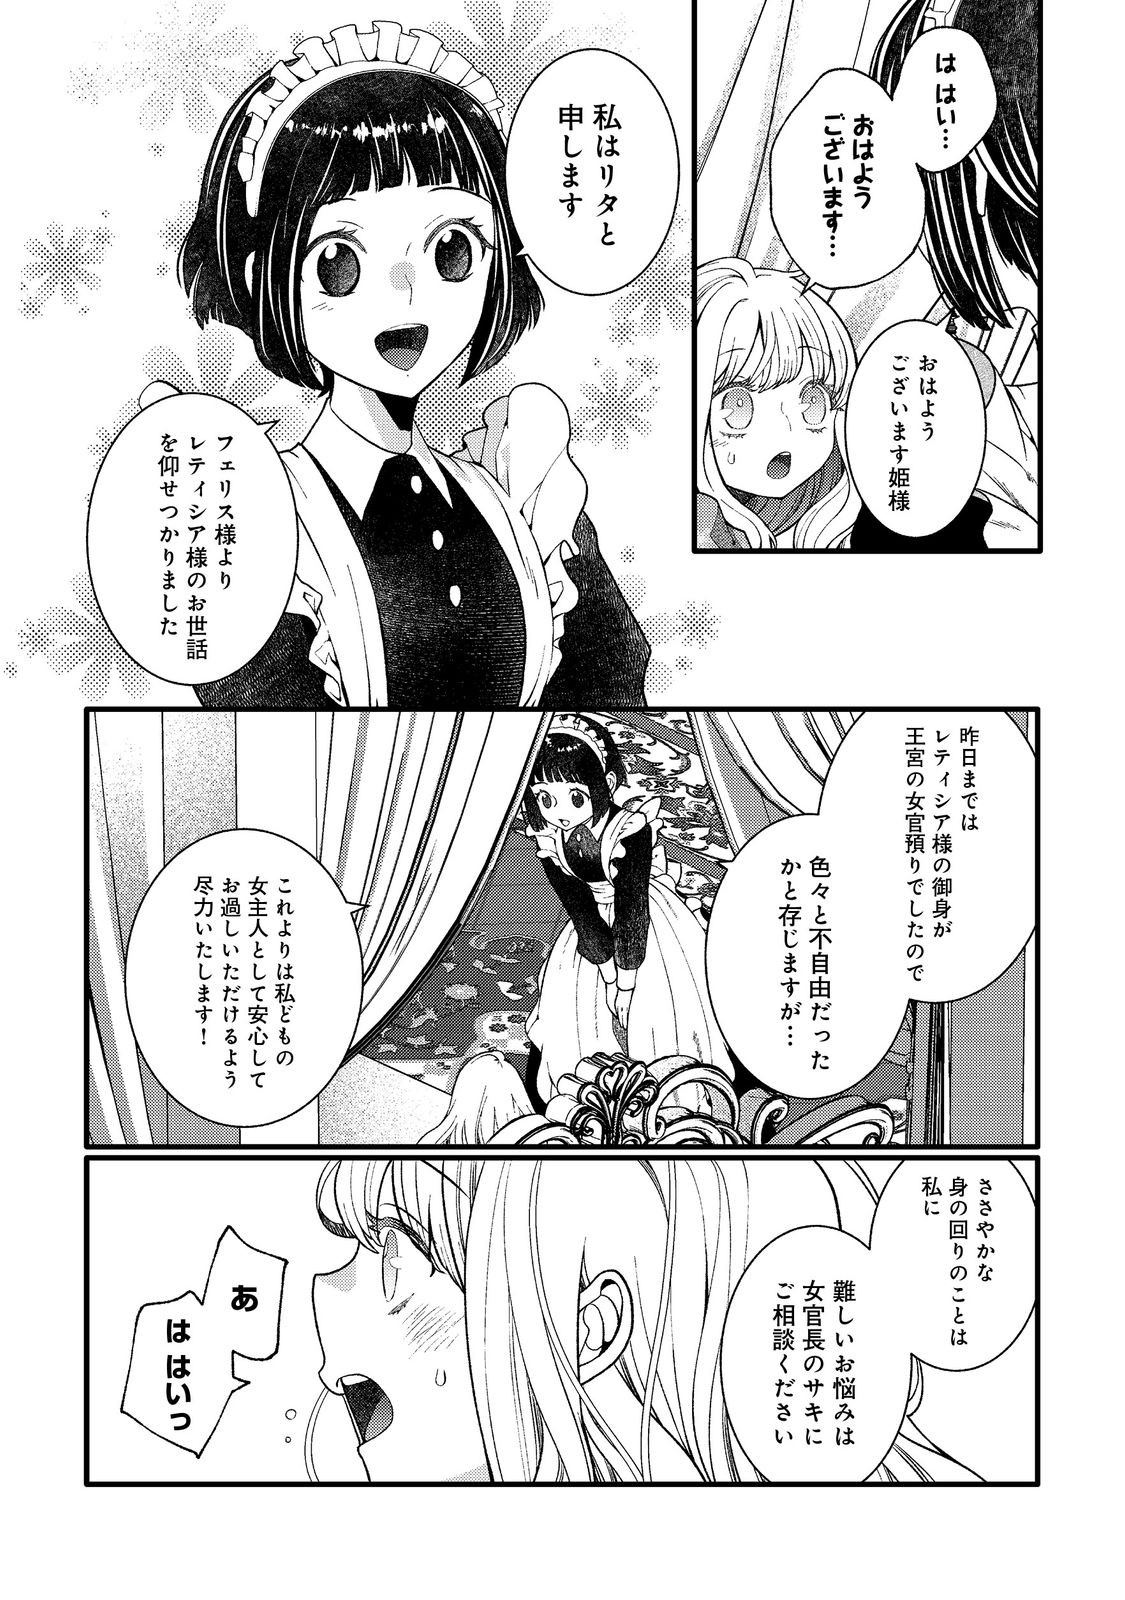 5-sai de, Ryuu no Ou Otoutou Denka no Hanayoume ni Narimashita - Chapter 3.2 - Page 8